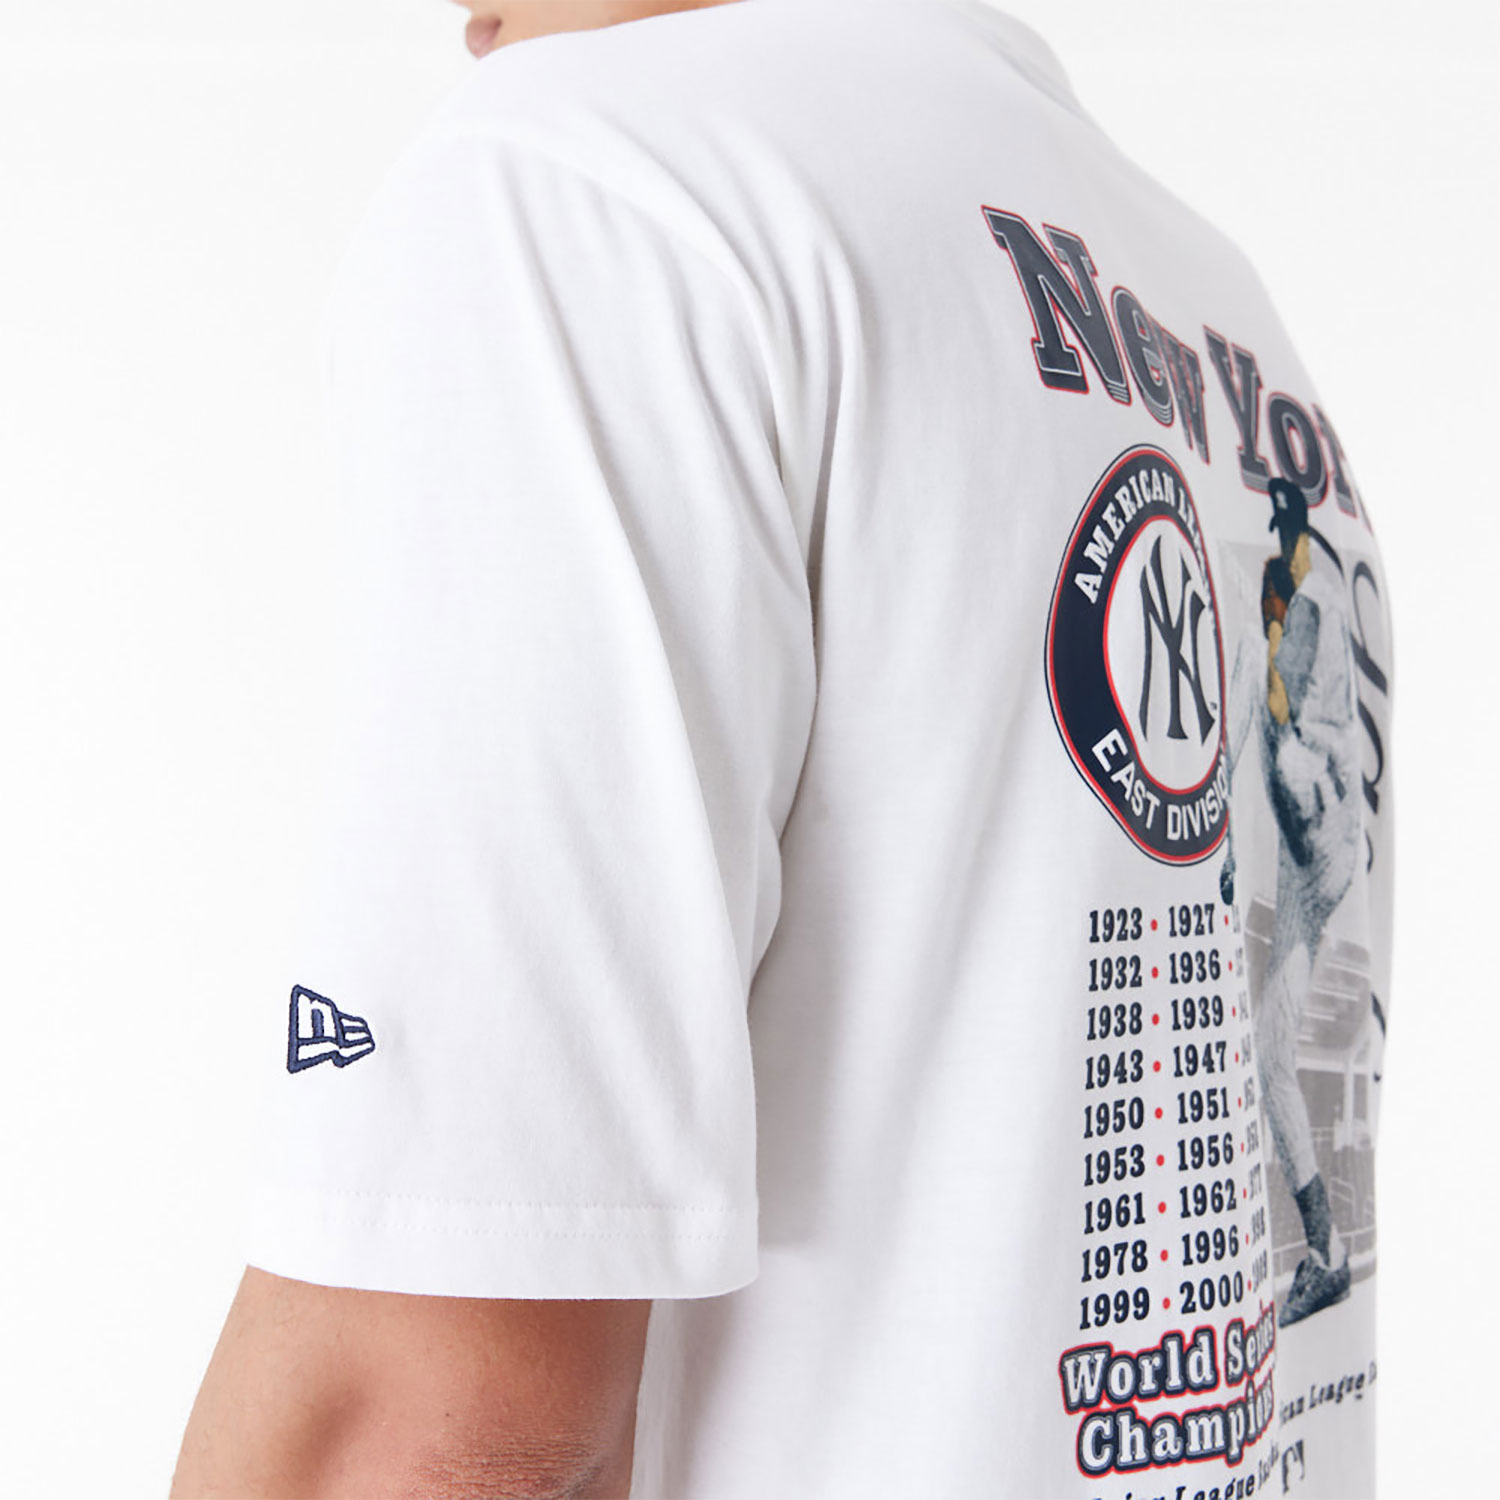 New York Yankees MLB Player Graphic White Oversized T-Shirt